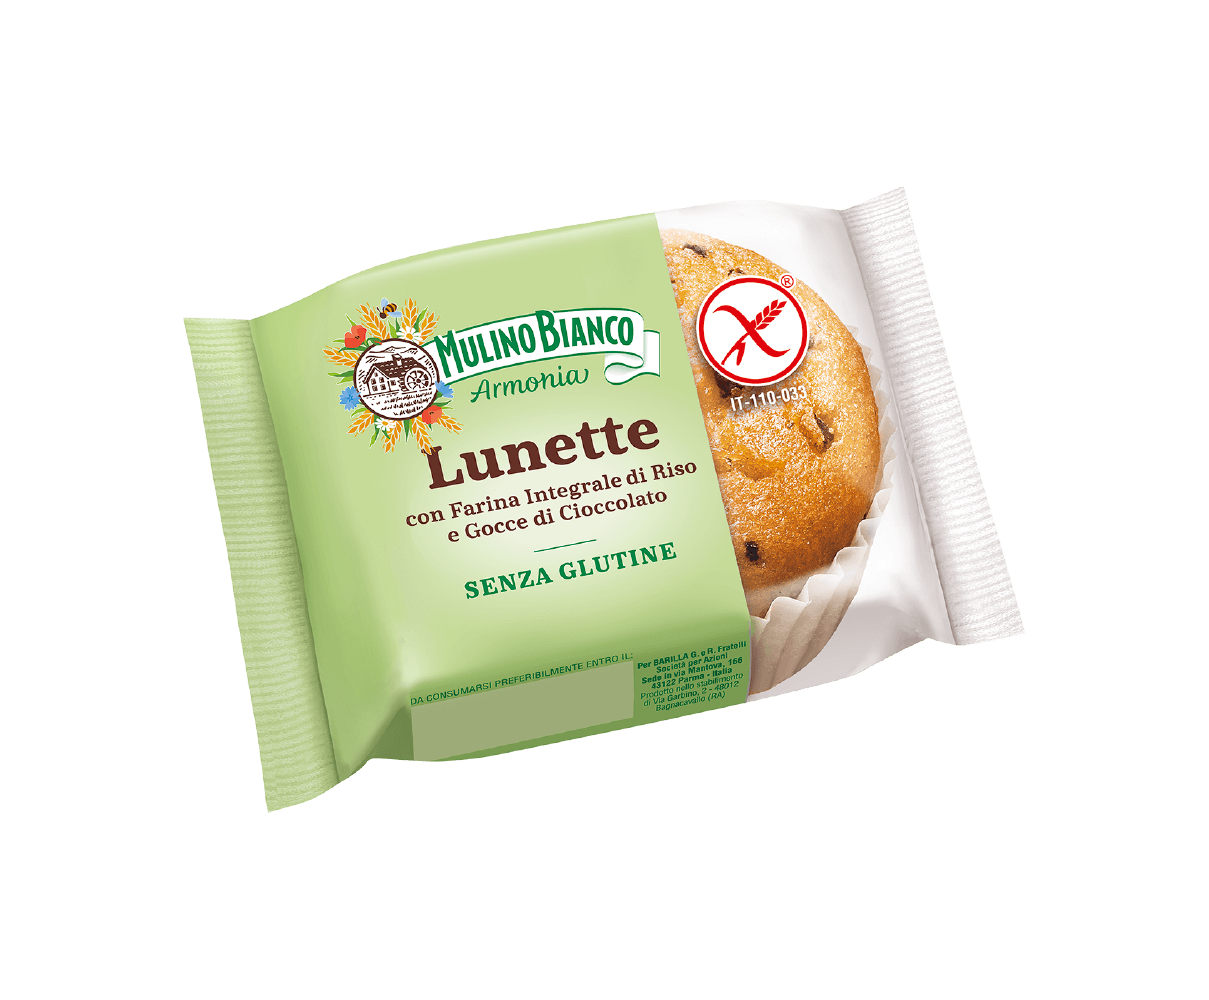 Confezione di Lunette senza glutine Barilla